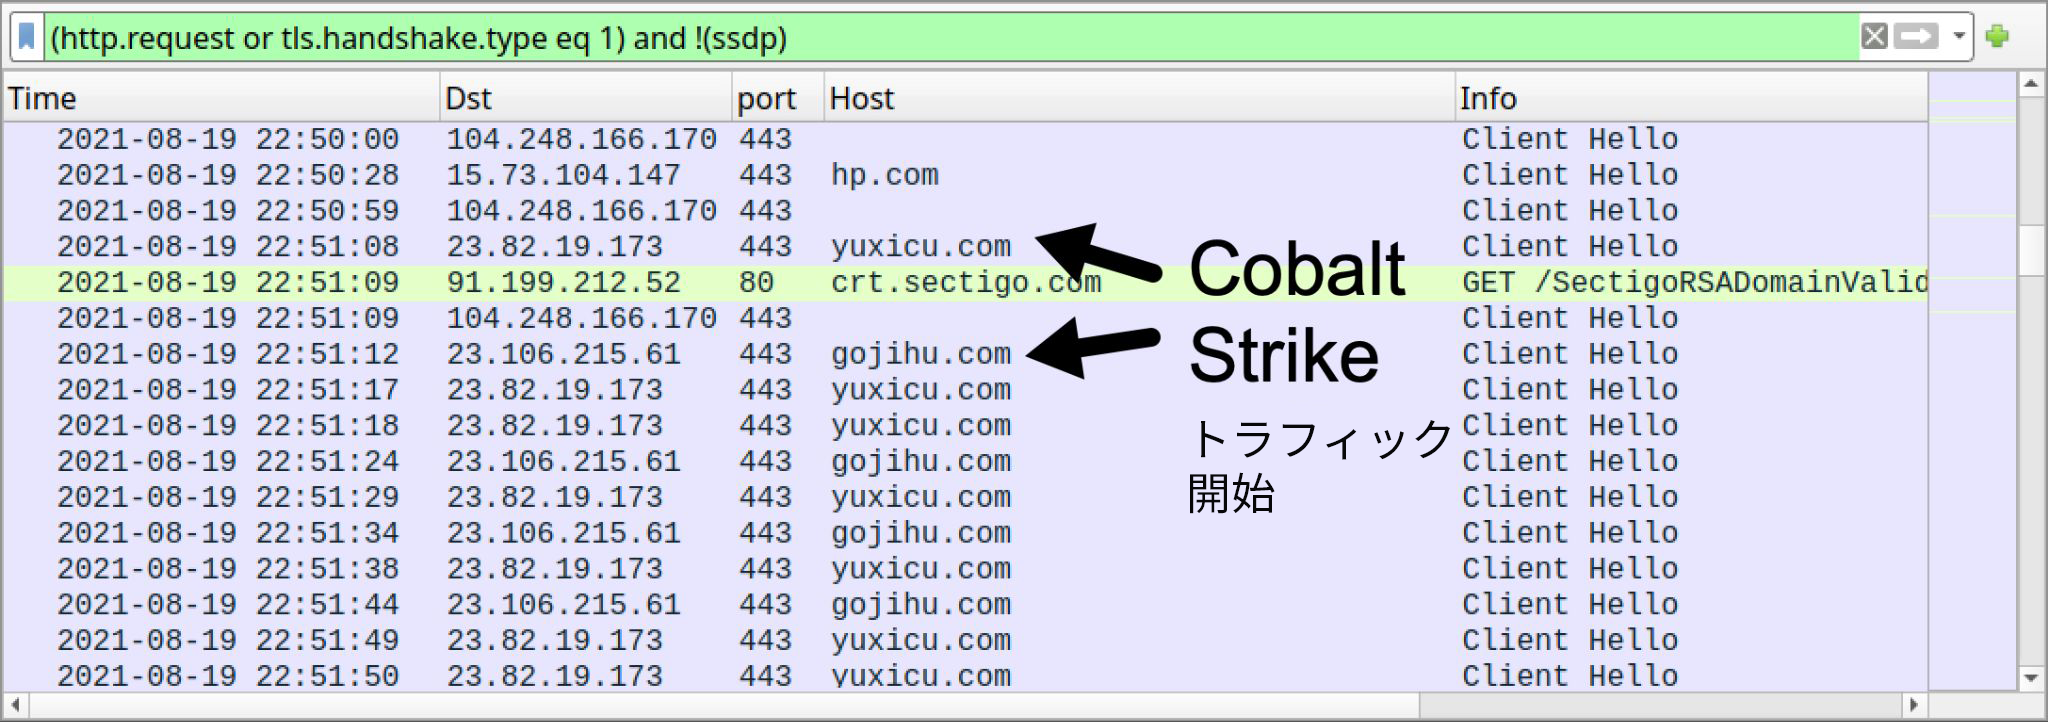 Wiresharkで確認したアクティビティ。黒い矢印は、Cobalt Strikeのアクティビティが始まる場所を示している。 